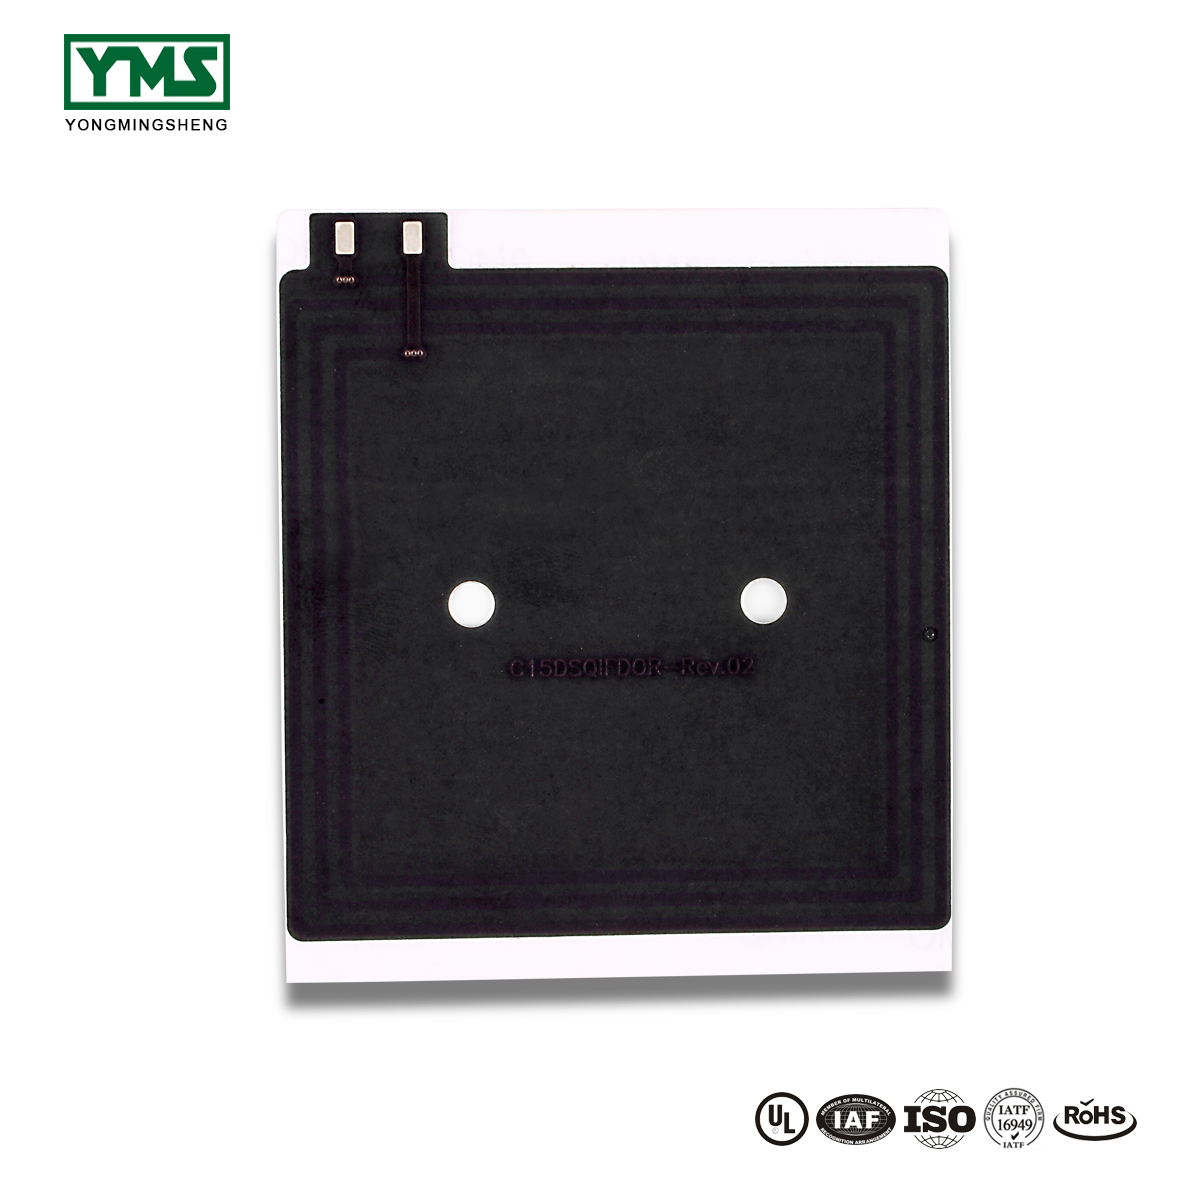 OEM/ODM Supplier Huge Size Pcb,Big Size Pcb - 1Layer Black solder mask Flexible Board | YMSPCB – Yongmingsheng